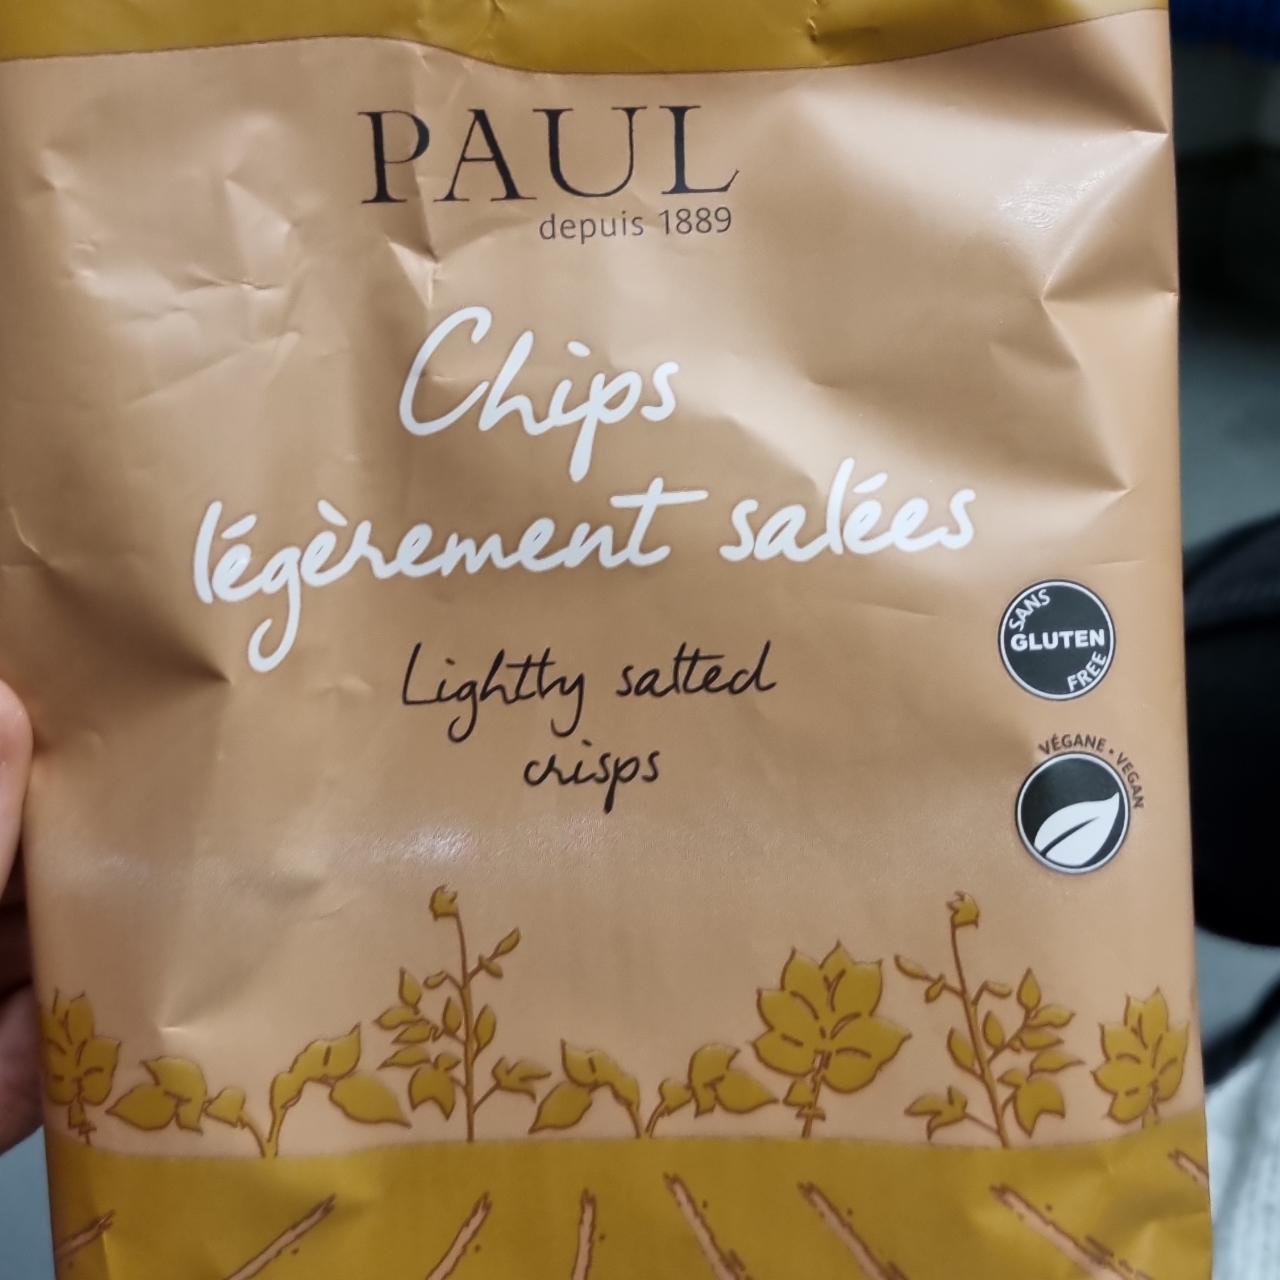 Fotografie - Chips légèrement salées Paul